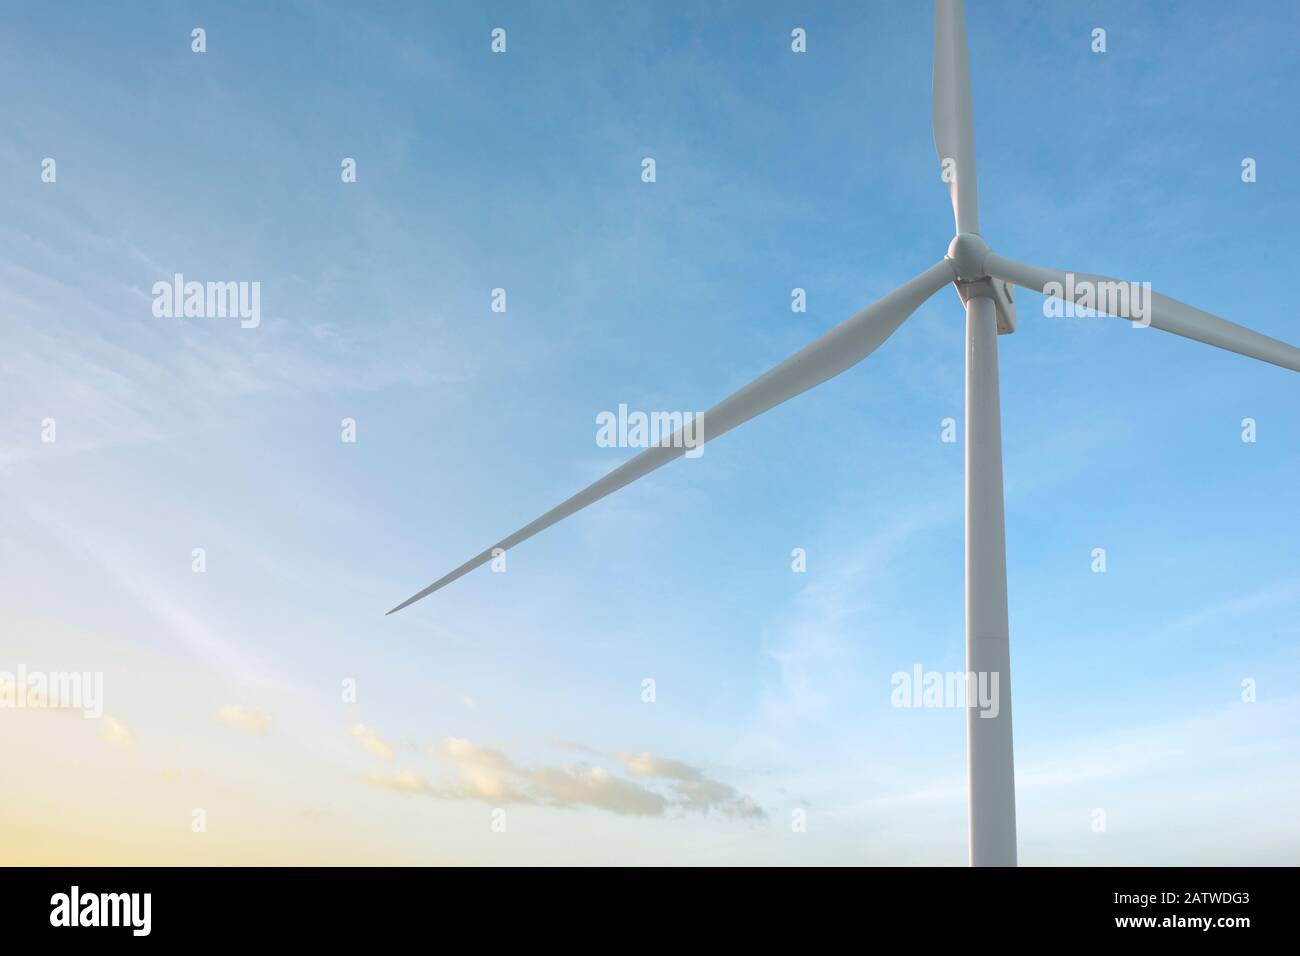 Nahwindturbine im Rotationsprinzip zur Erzeugung von Energie im Freien mit blauem Himmel Hintergrund, Erhaltung und nachhaltigem Energiekonzept. Stockfoto